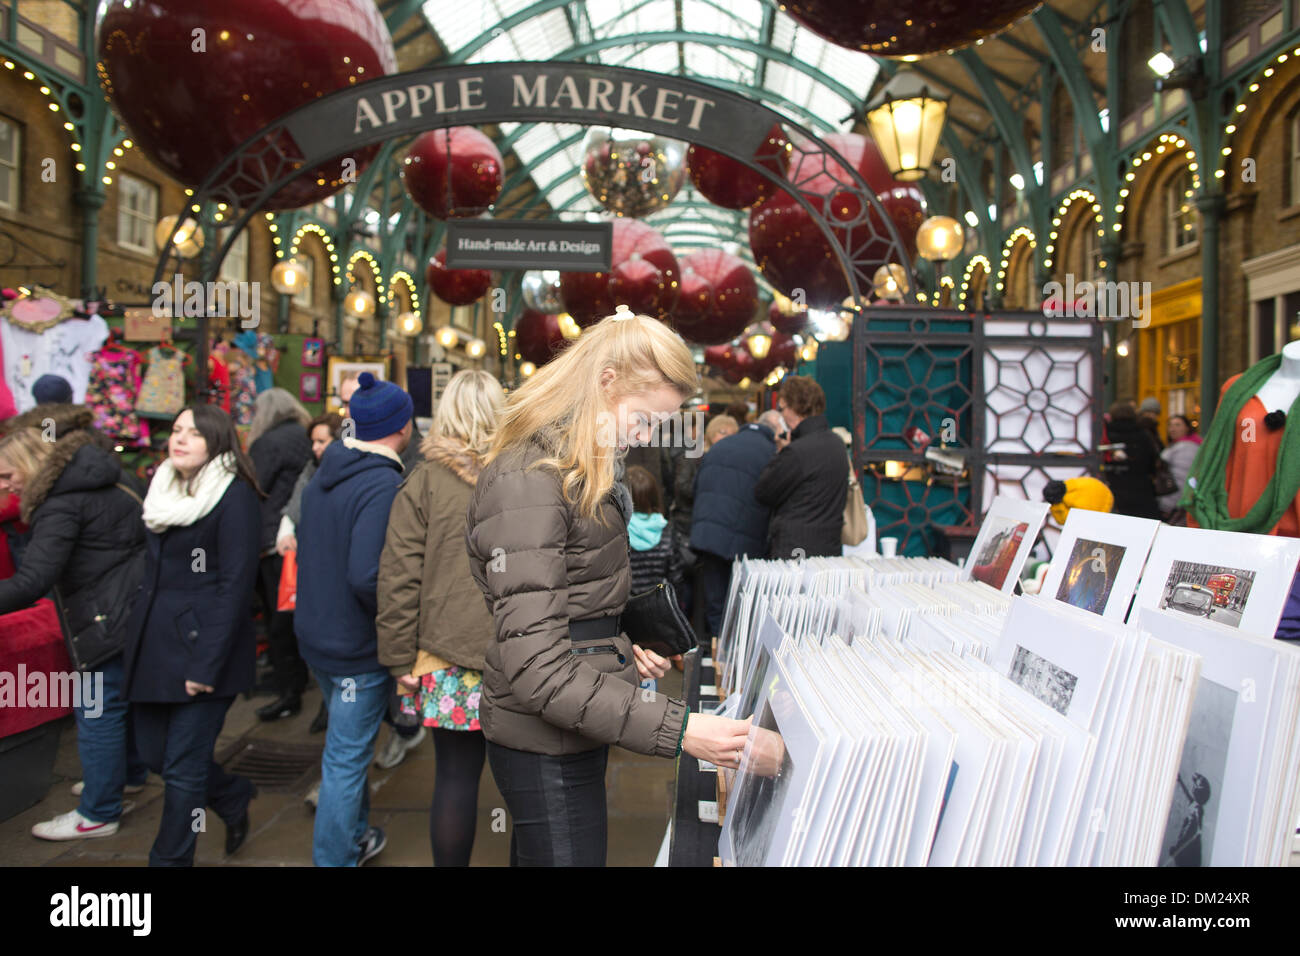 Apple Market in Covent Garden, Christmas Shopping, London, UK Stock Photo